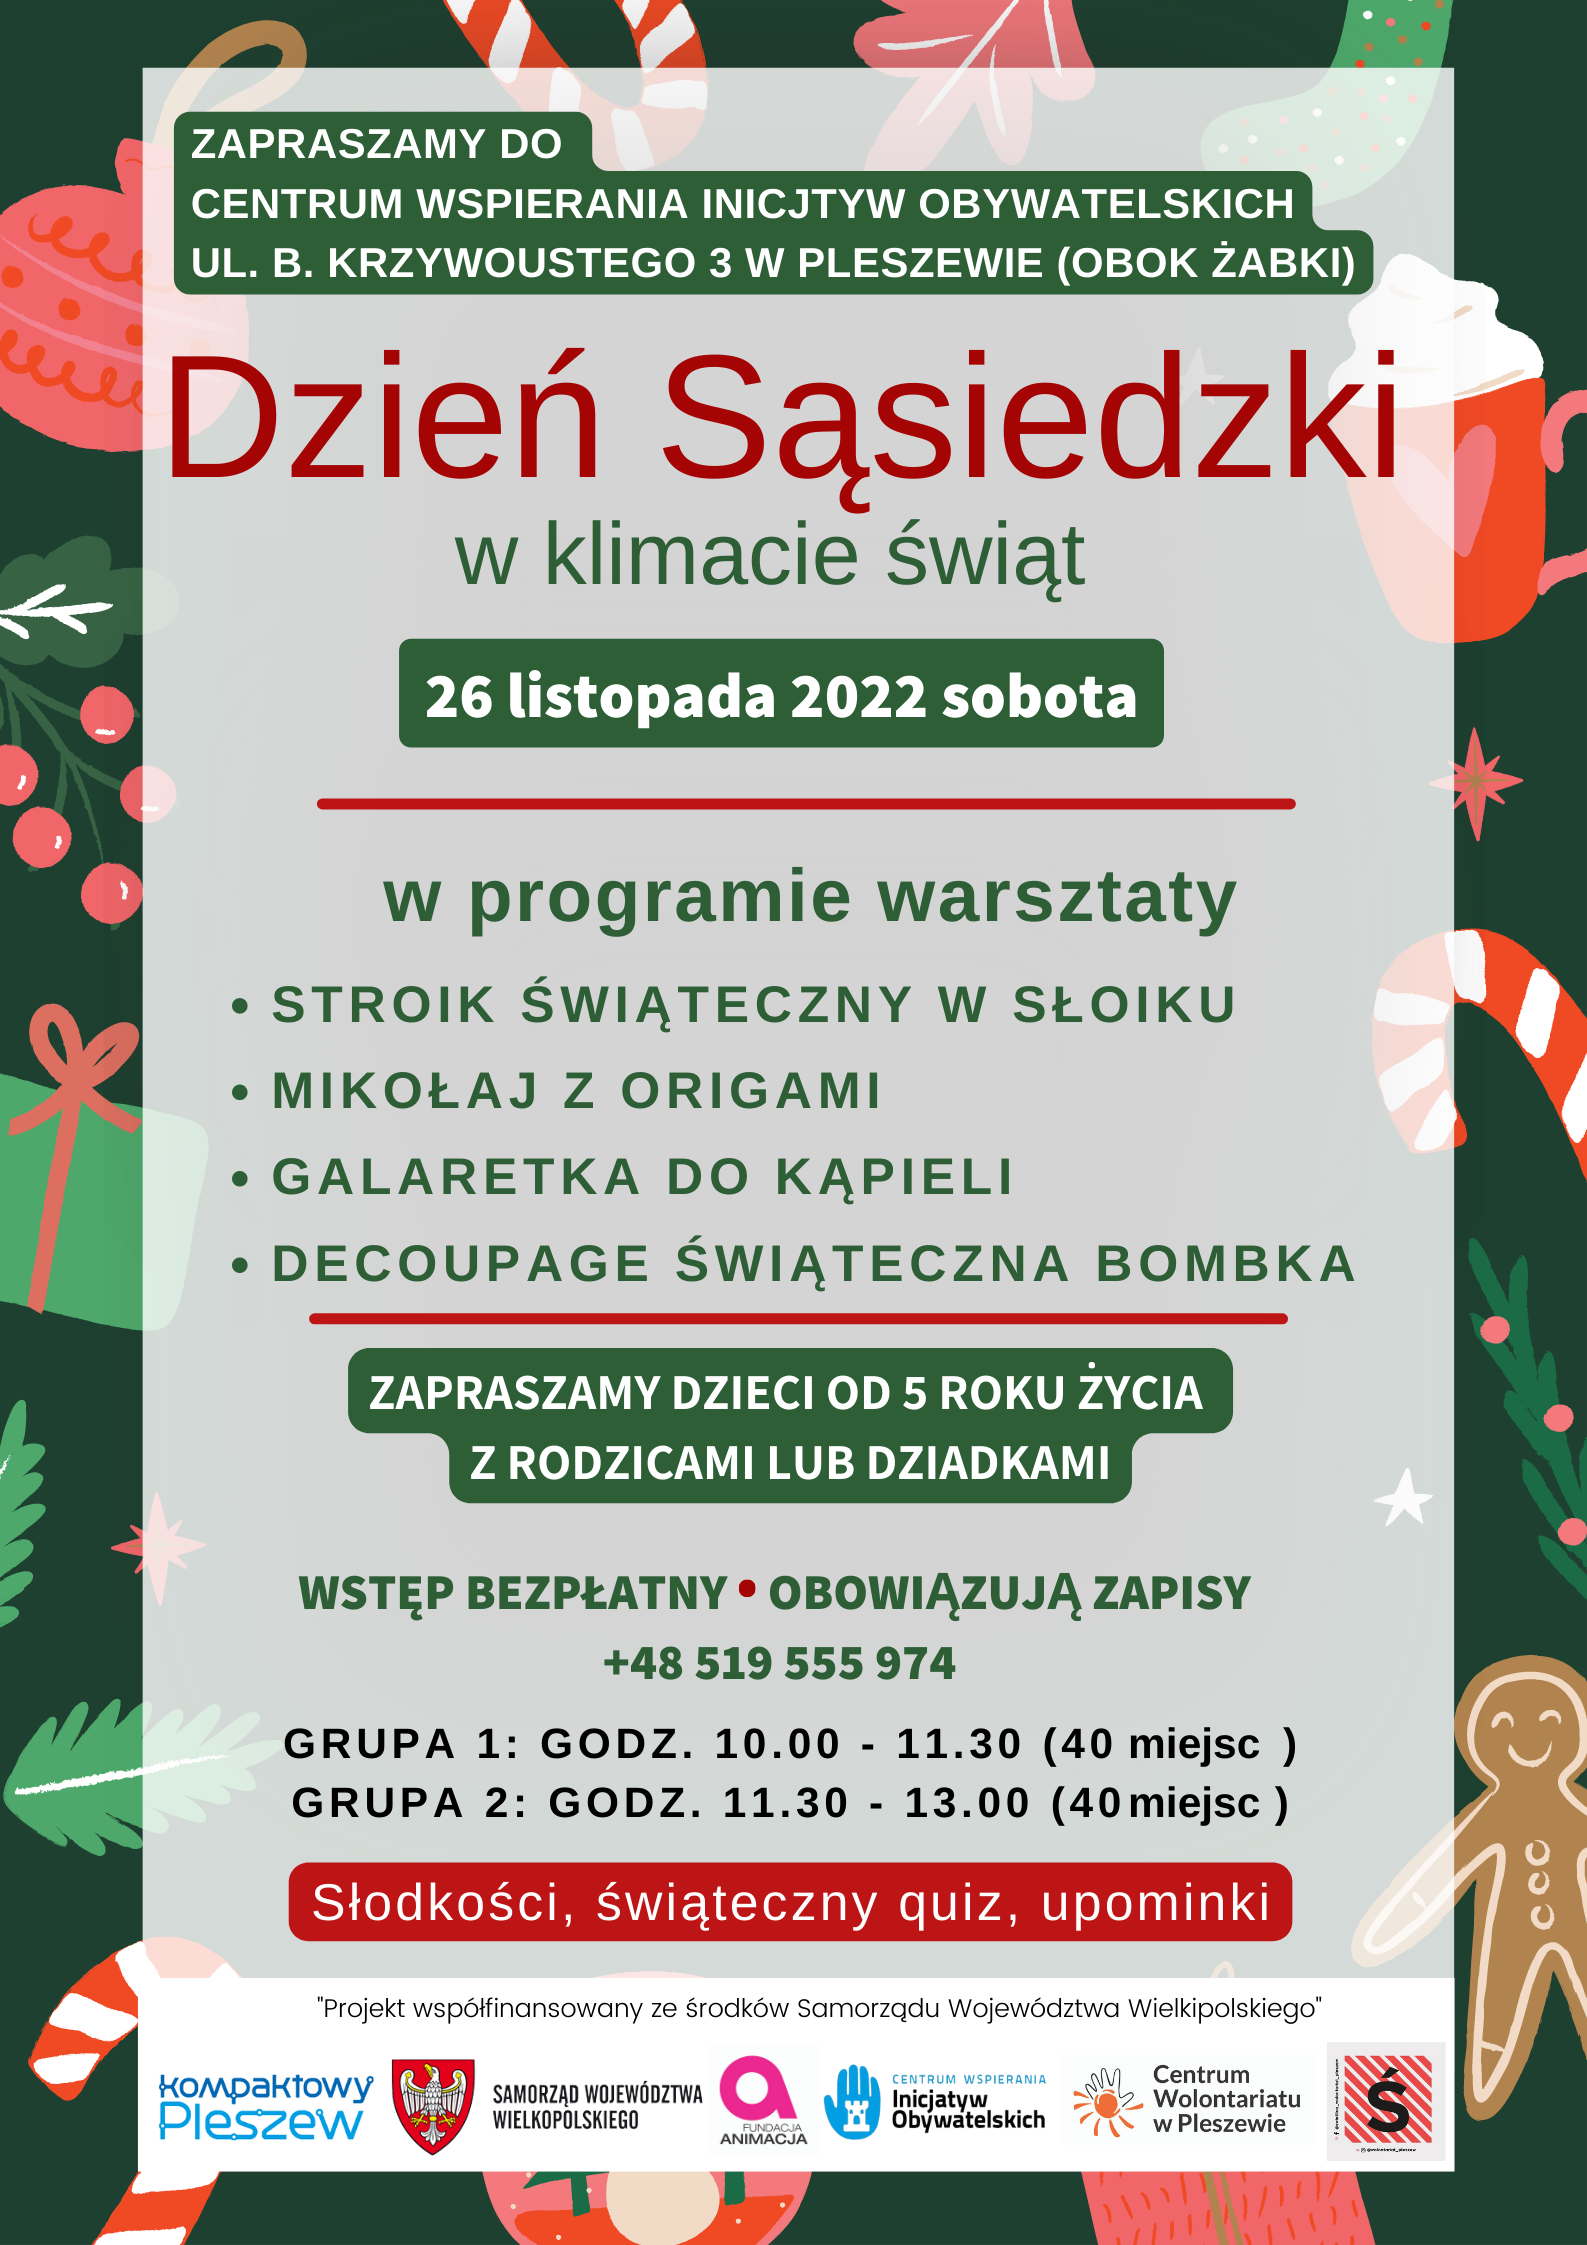 Plakat Dnia Sąsiedzkiego dla dzieci od 5 roku życia wraz z opiekunami odbywającego się w Centrum Wspierania Inicjatyw Obywatelskich w Pleszewie dnia 26 listopada w dwóch grupach o godzinie 10:00 oraz 11:30